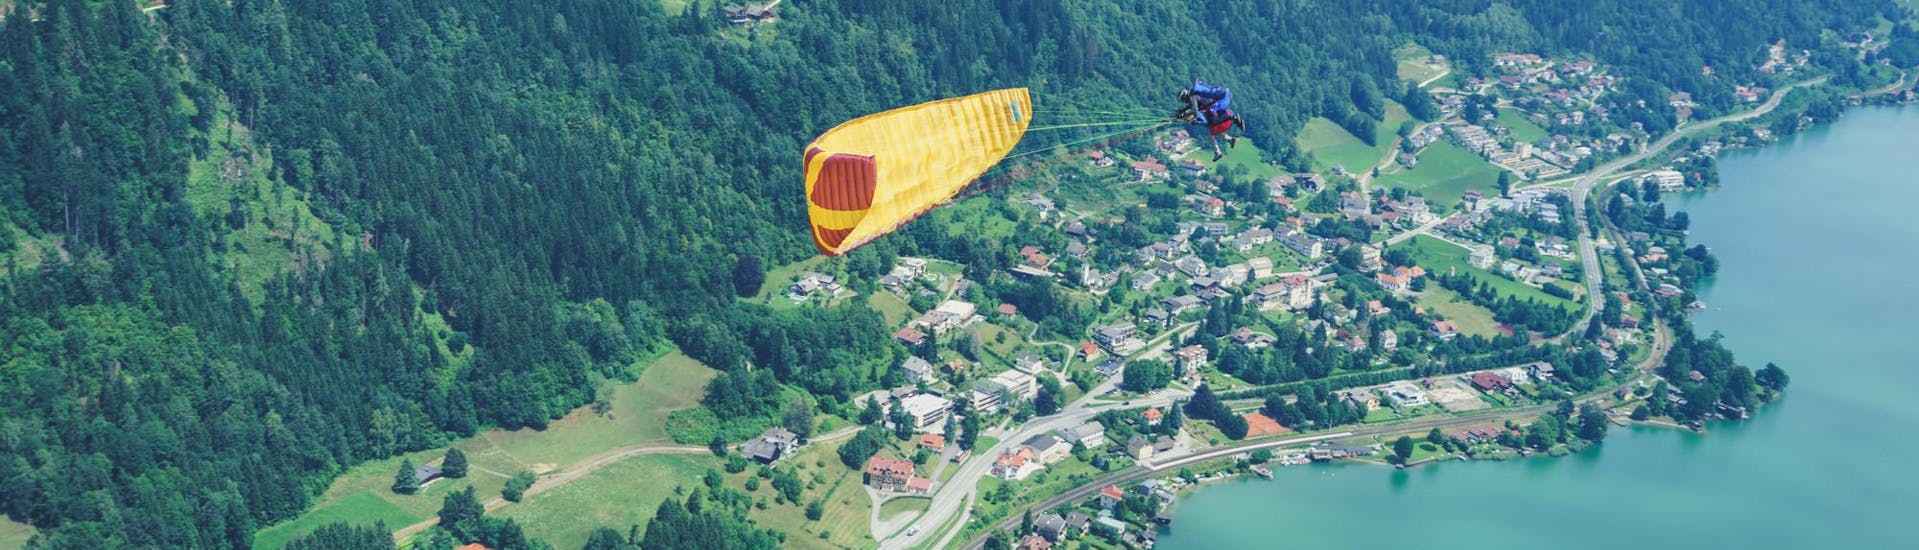 Een acrobatische bocht tijdens tandem paragliden in Karinthië - Adrenaline vlucht met de beste plaats - Flieger Base Villach.